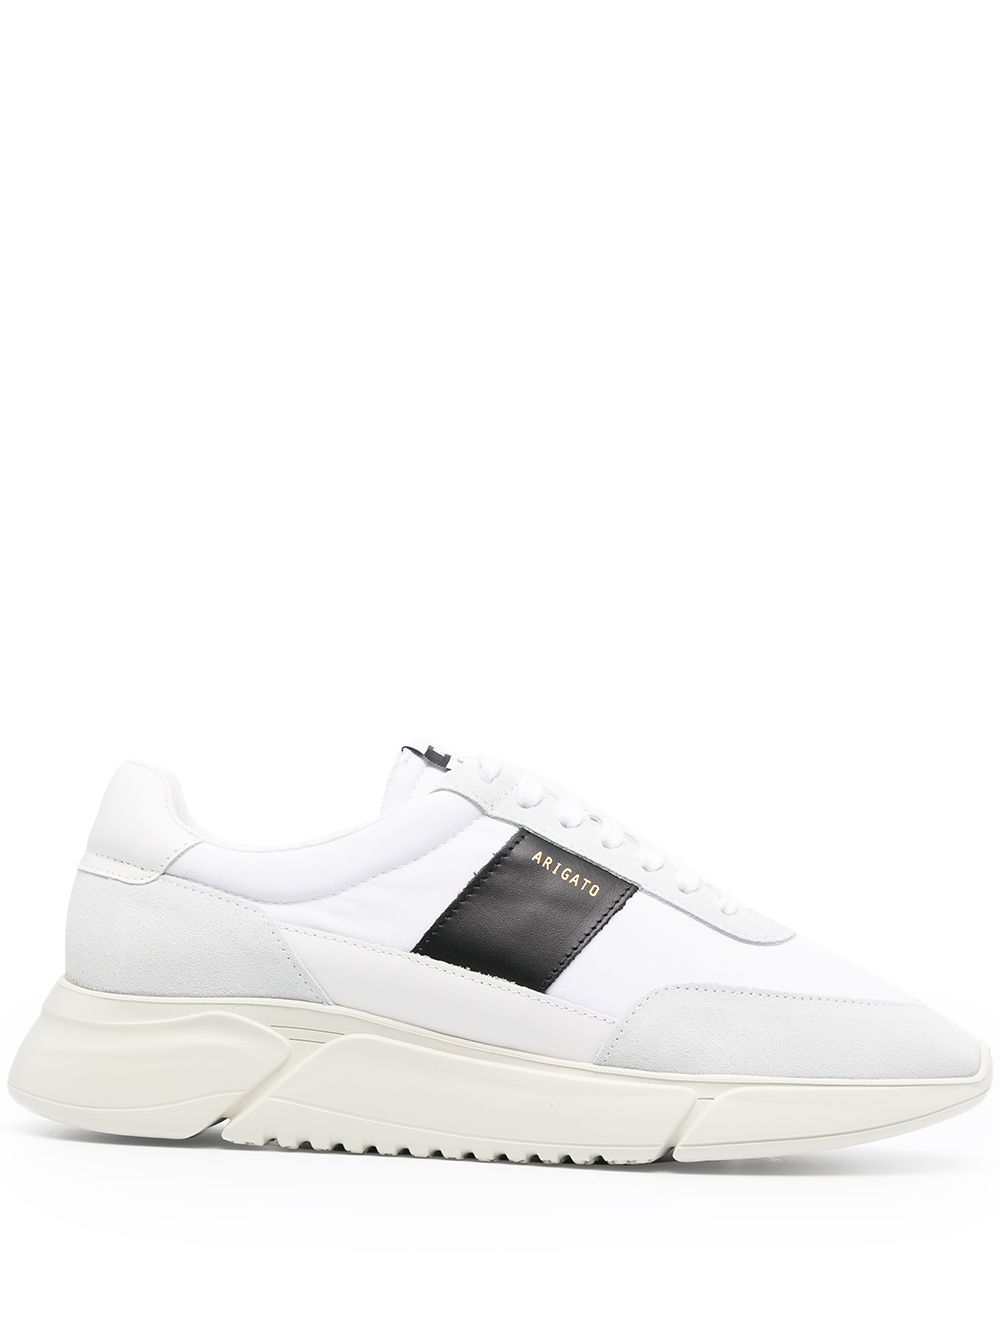 Axel Arigato Genesis Vintage sneakers - White von Axel Arigato